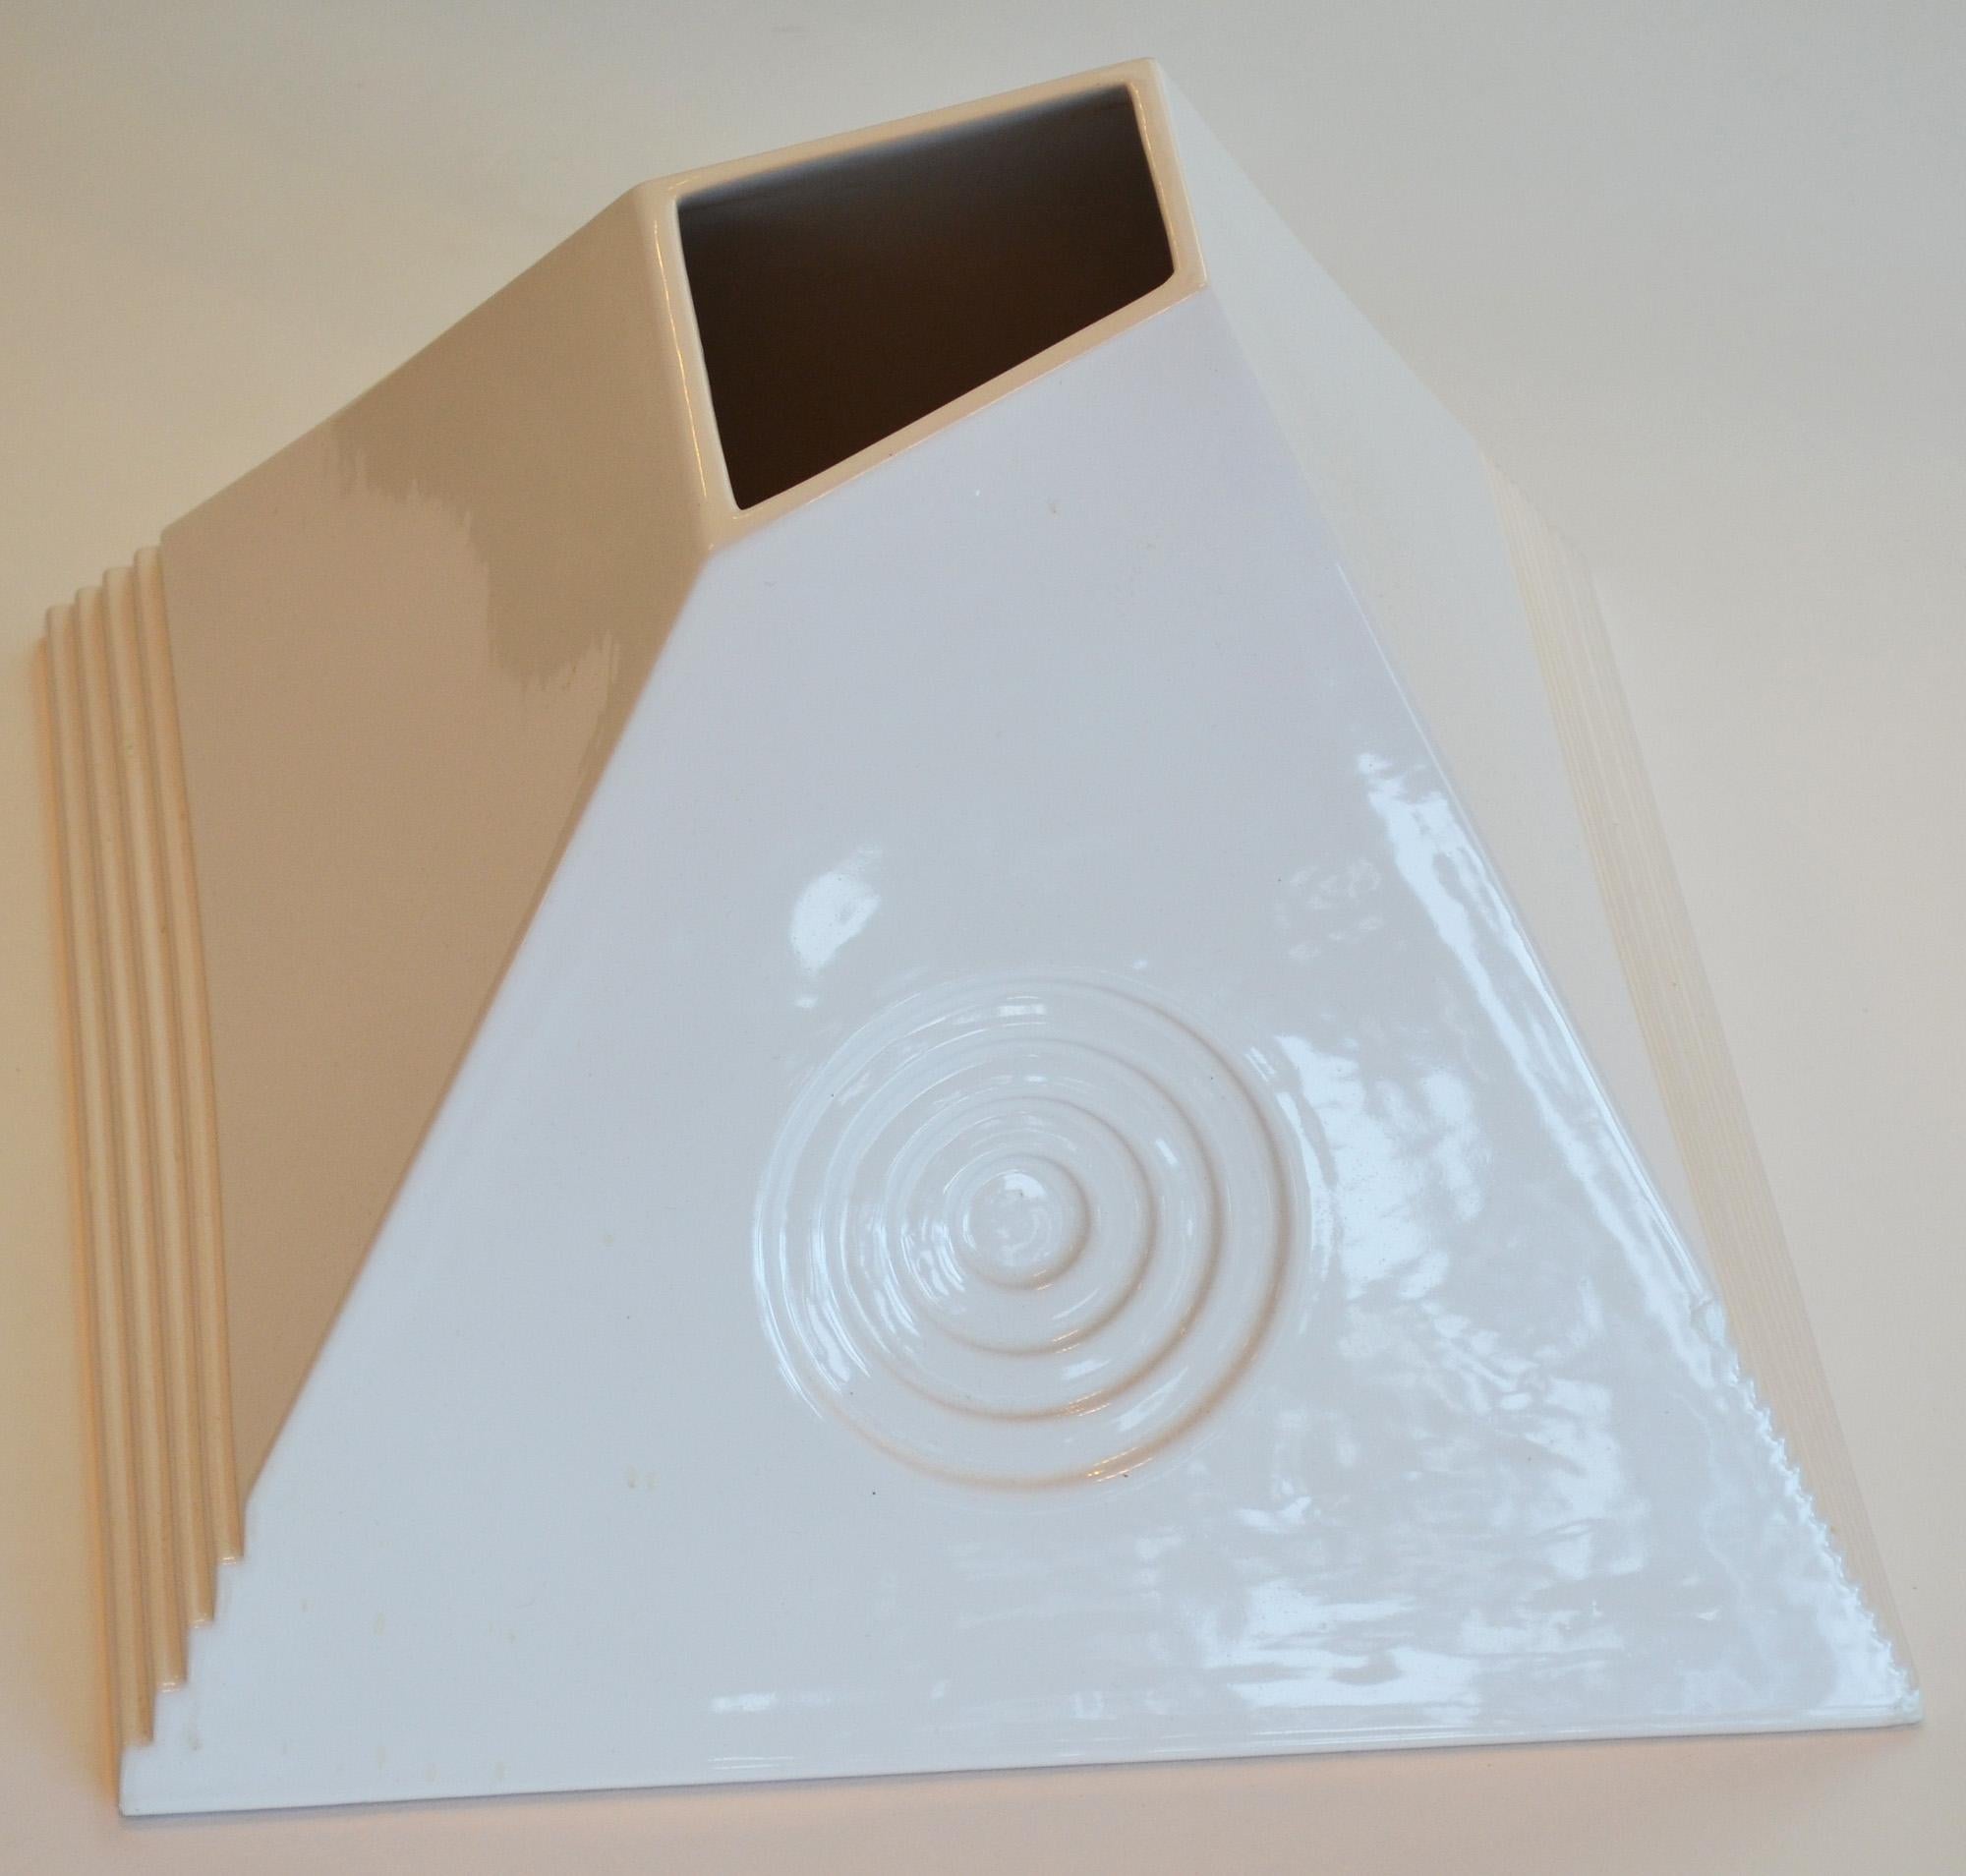 Keramische Pyramidenvase von Sergio Asti Italien signiert. Weiß glasierte Vase in Pyramidenform mit geometrischem Dekor und Schrägschnitt. Auf der Unterseite signiert 